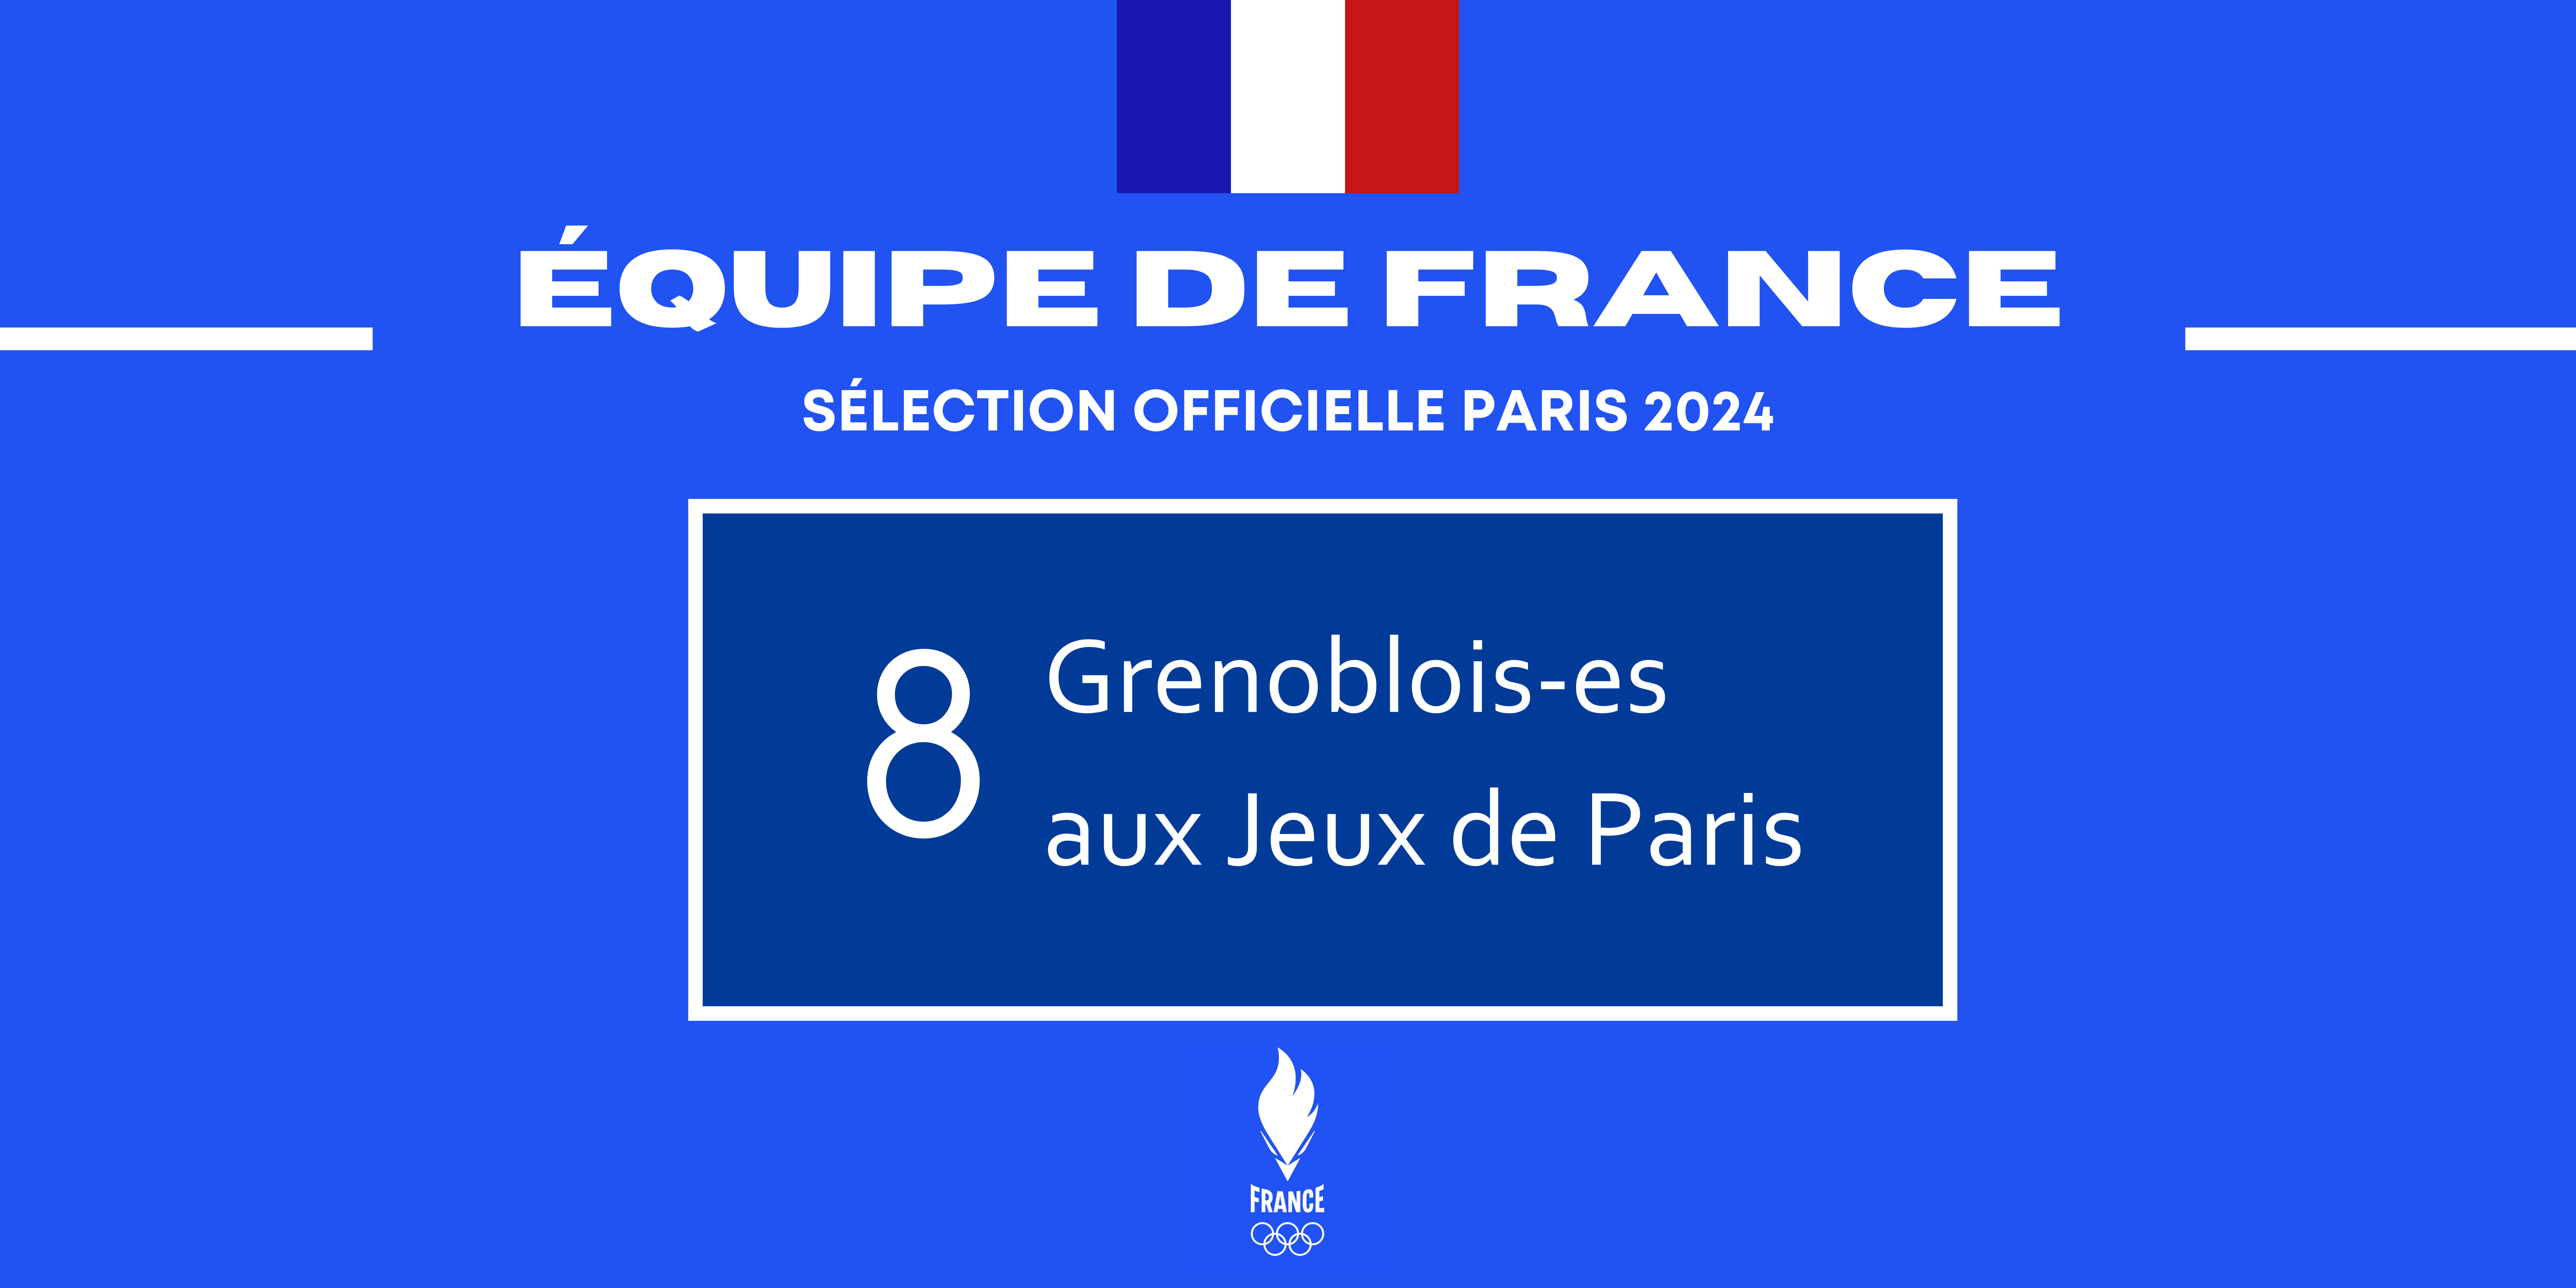 8 Grenoblois-es aux Jeux de Paris